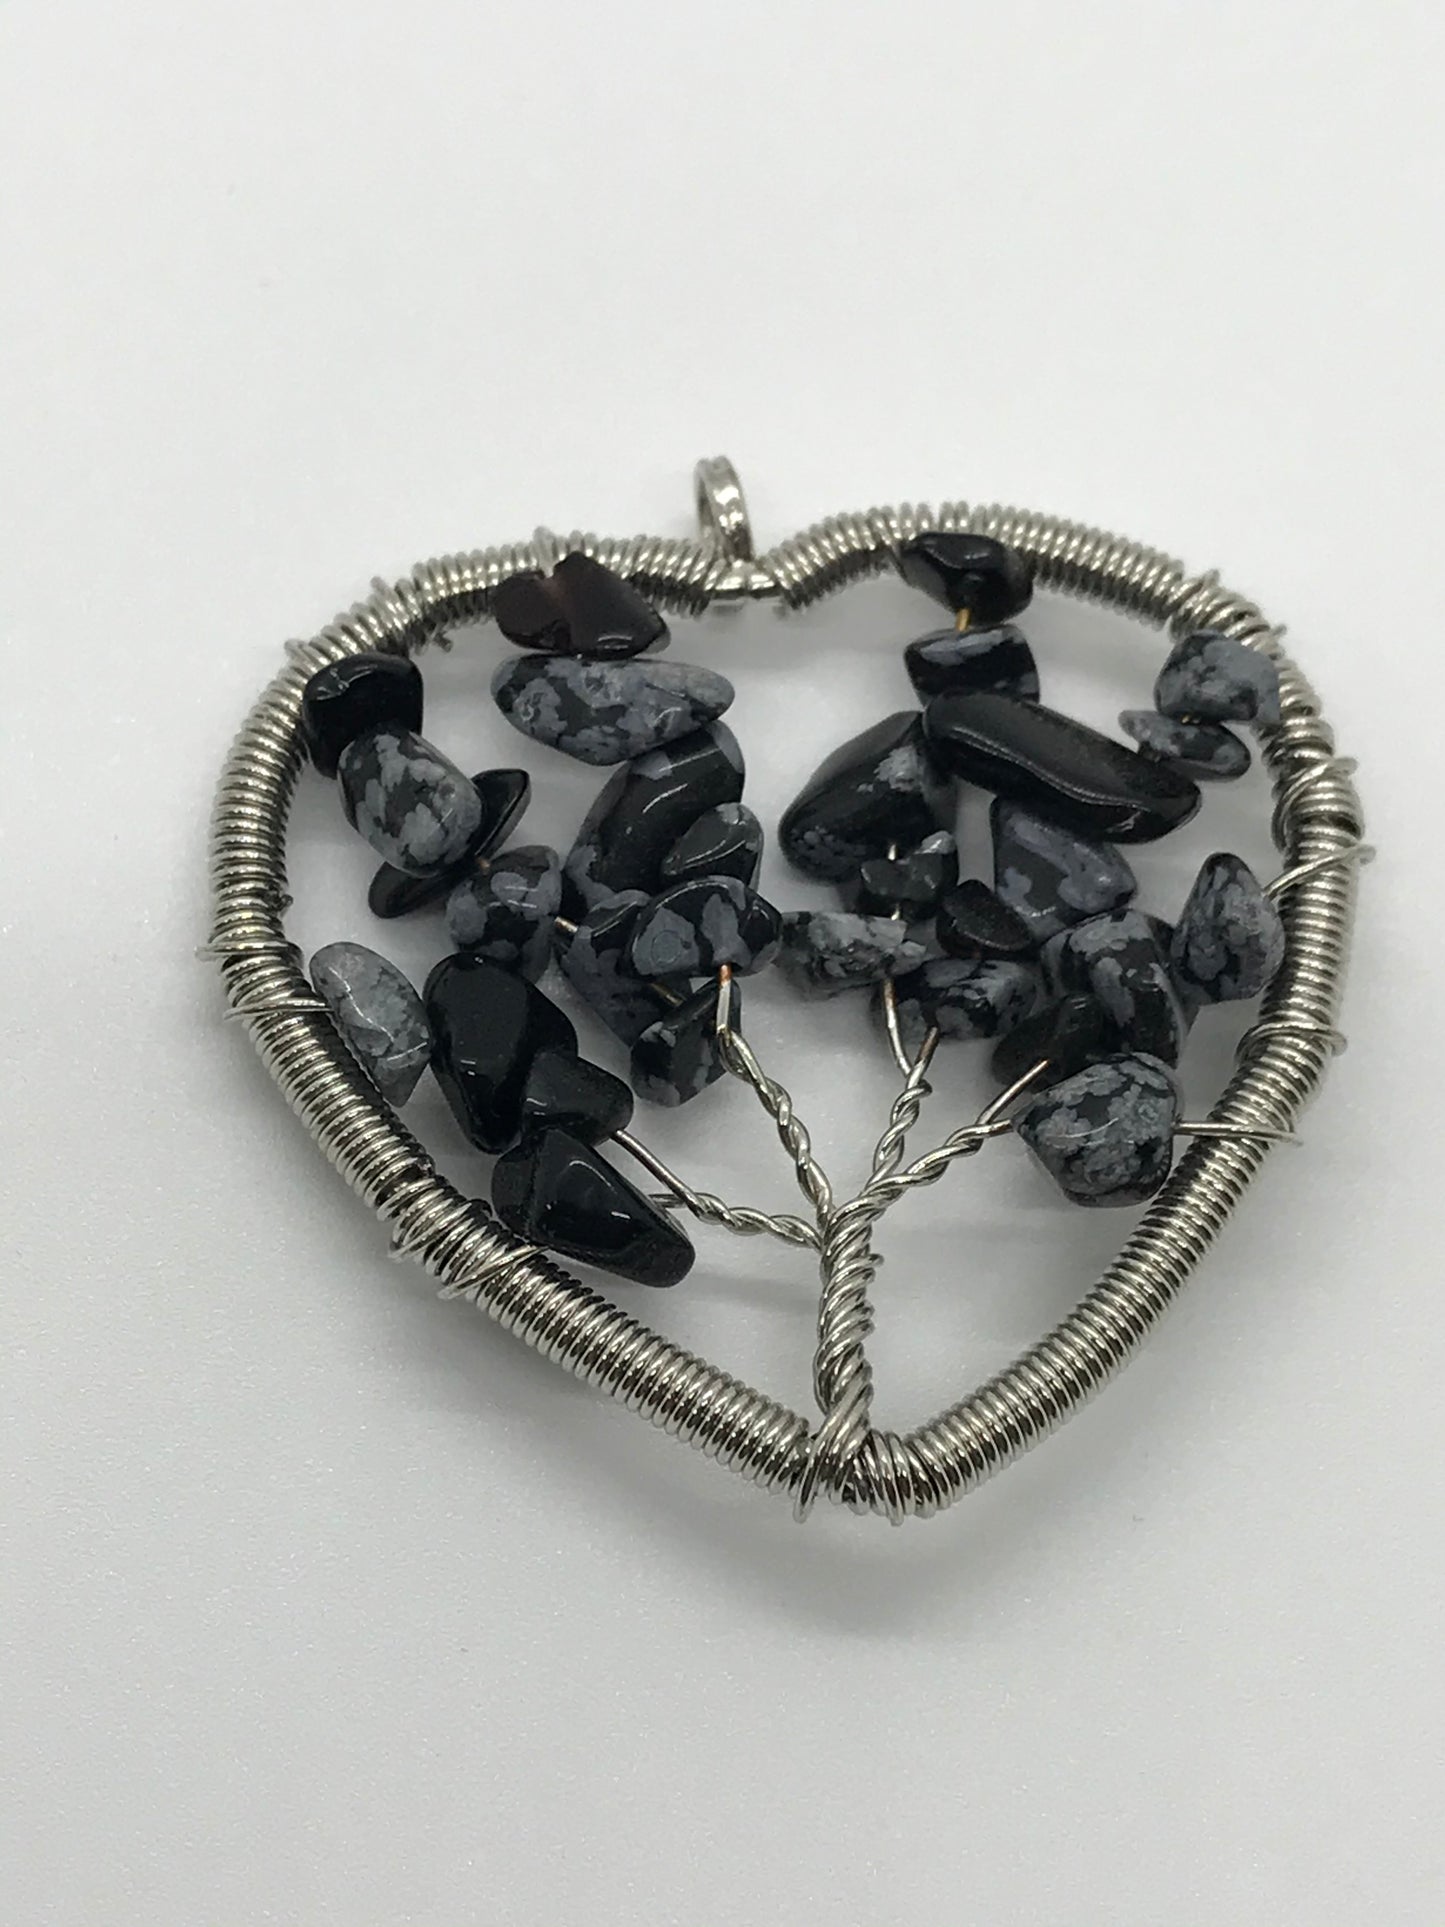 Snowflake Obsidian Tree Of Life Wirewrap Pendant